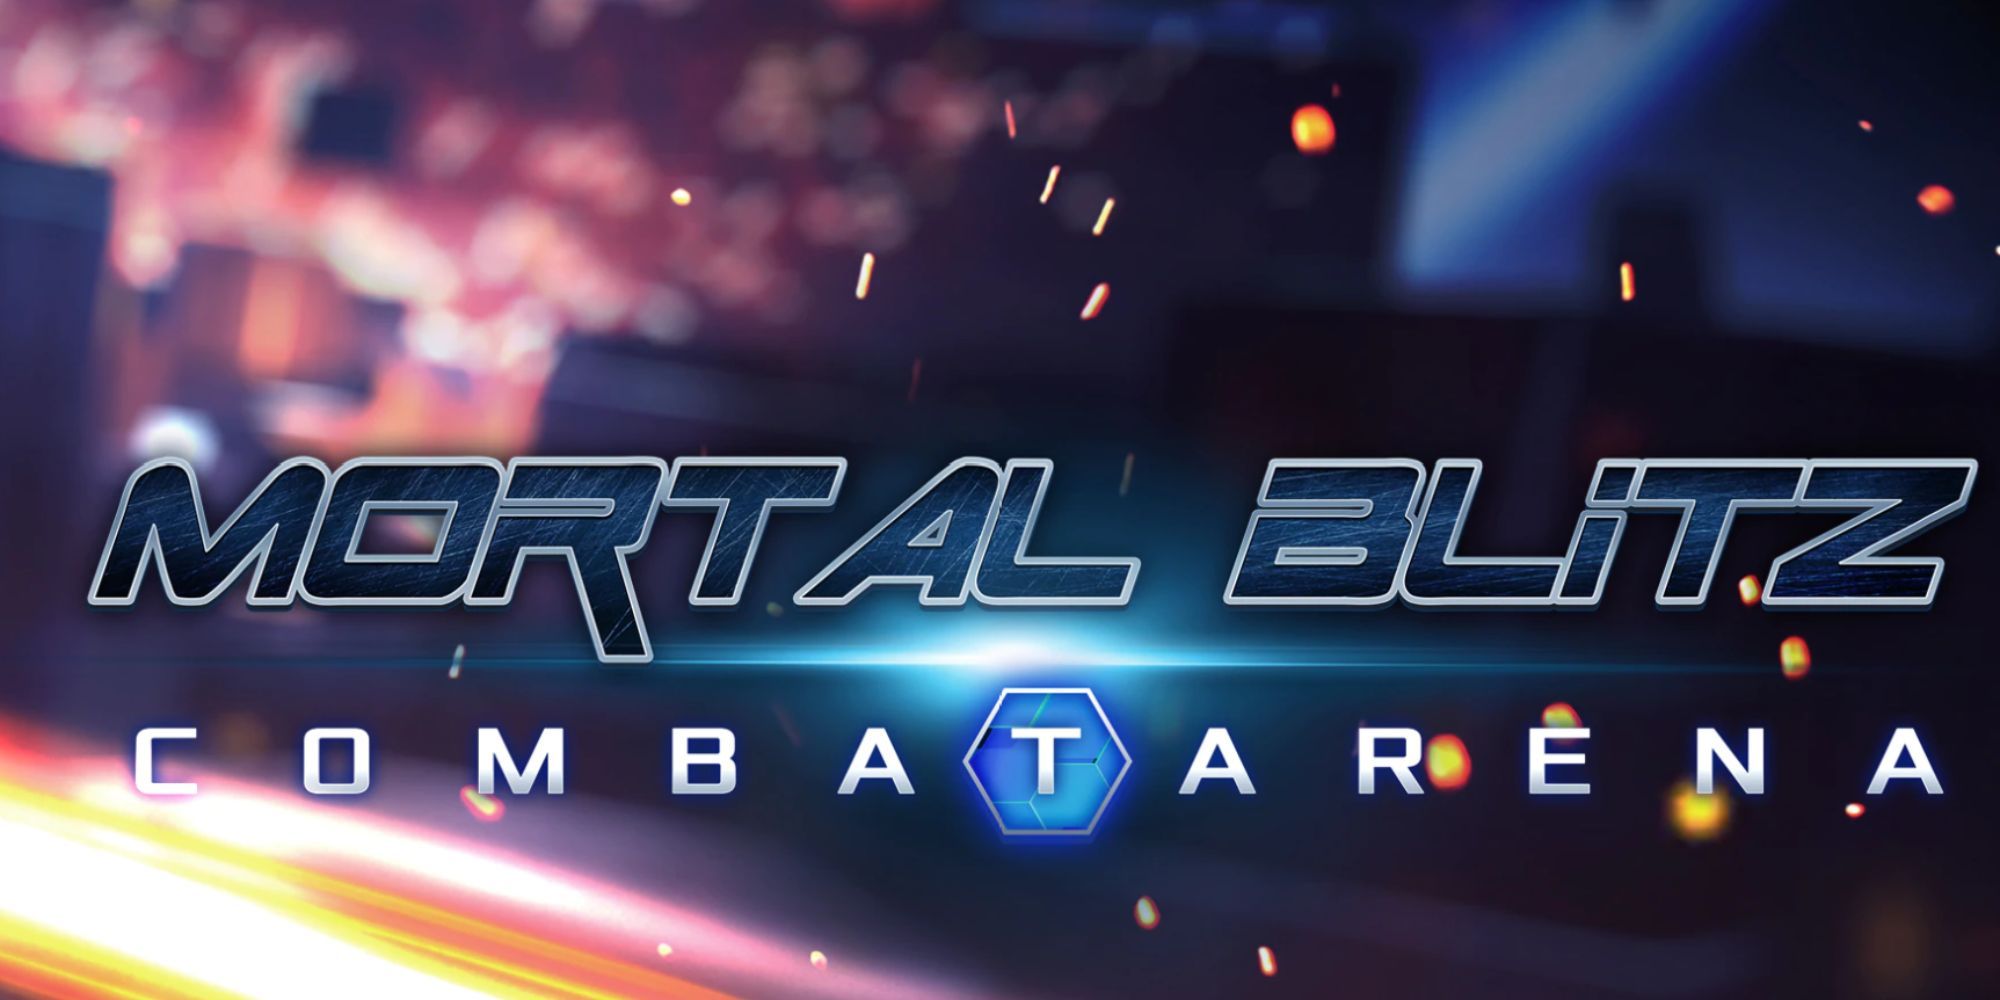 Mortal Blitz Combat Arena VR Cover Art